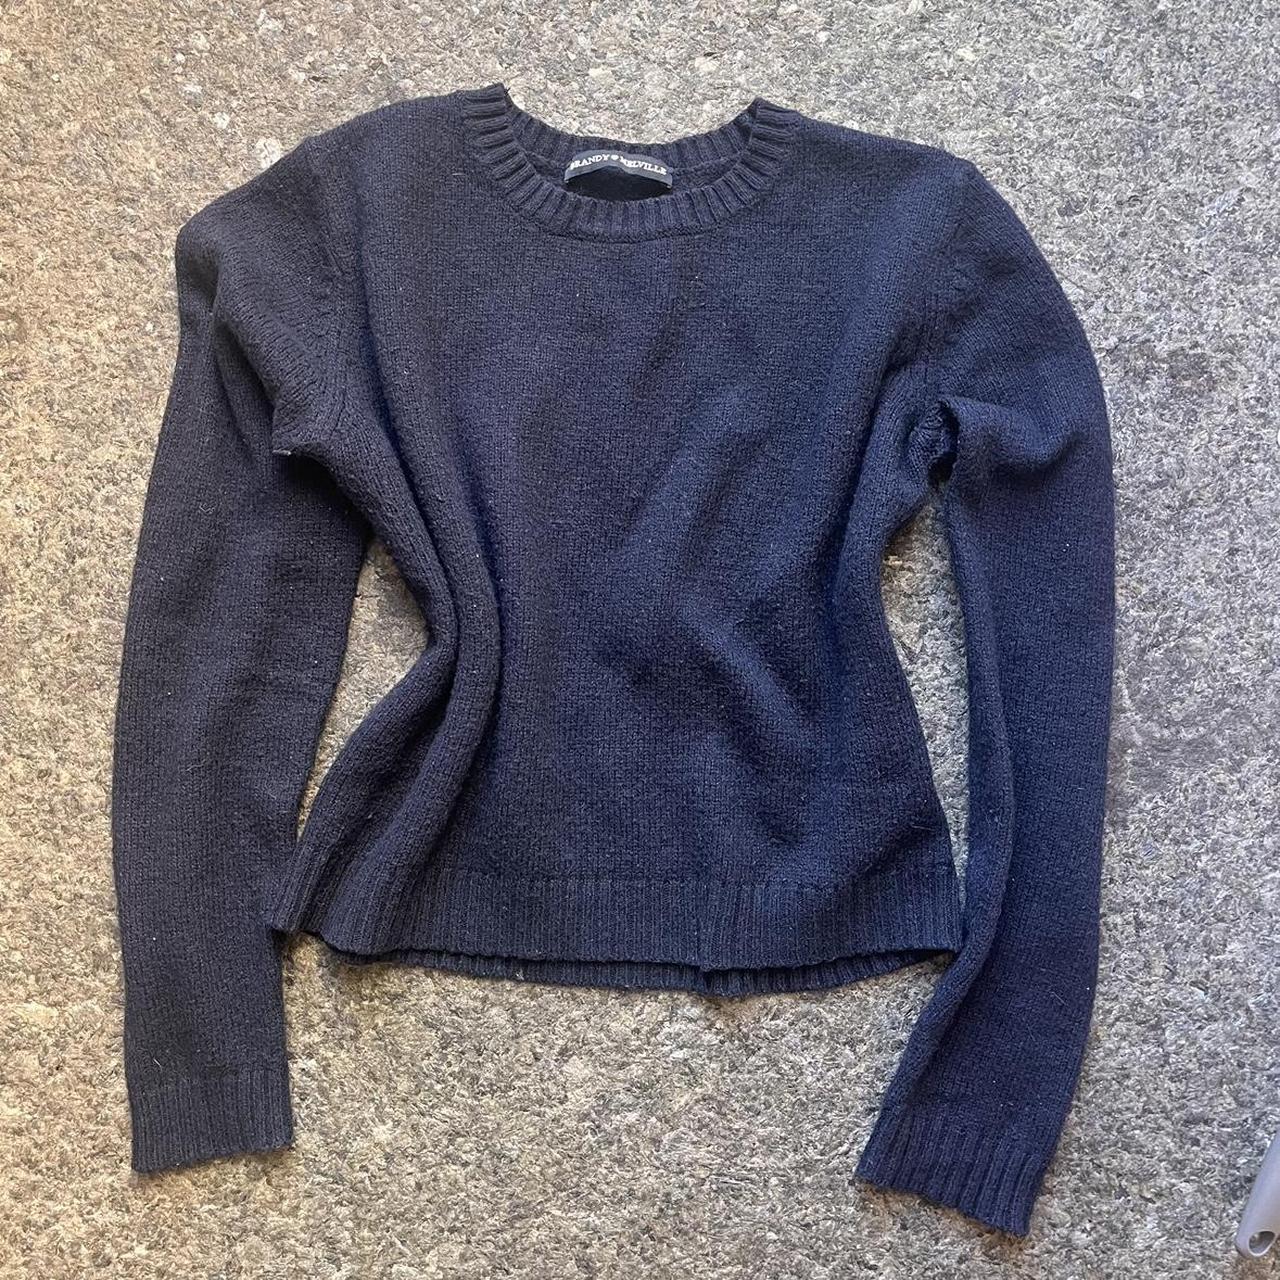 Basic cropped navy blue knit brandy Melville sweater... - Depop